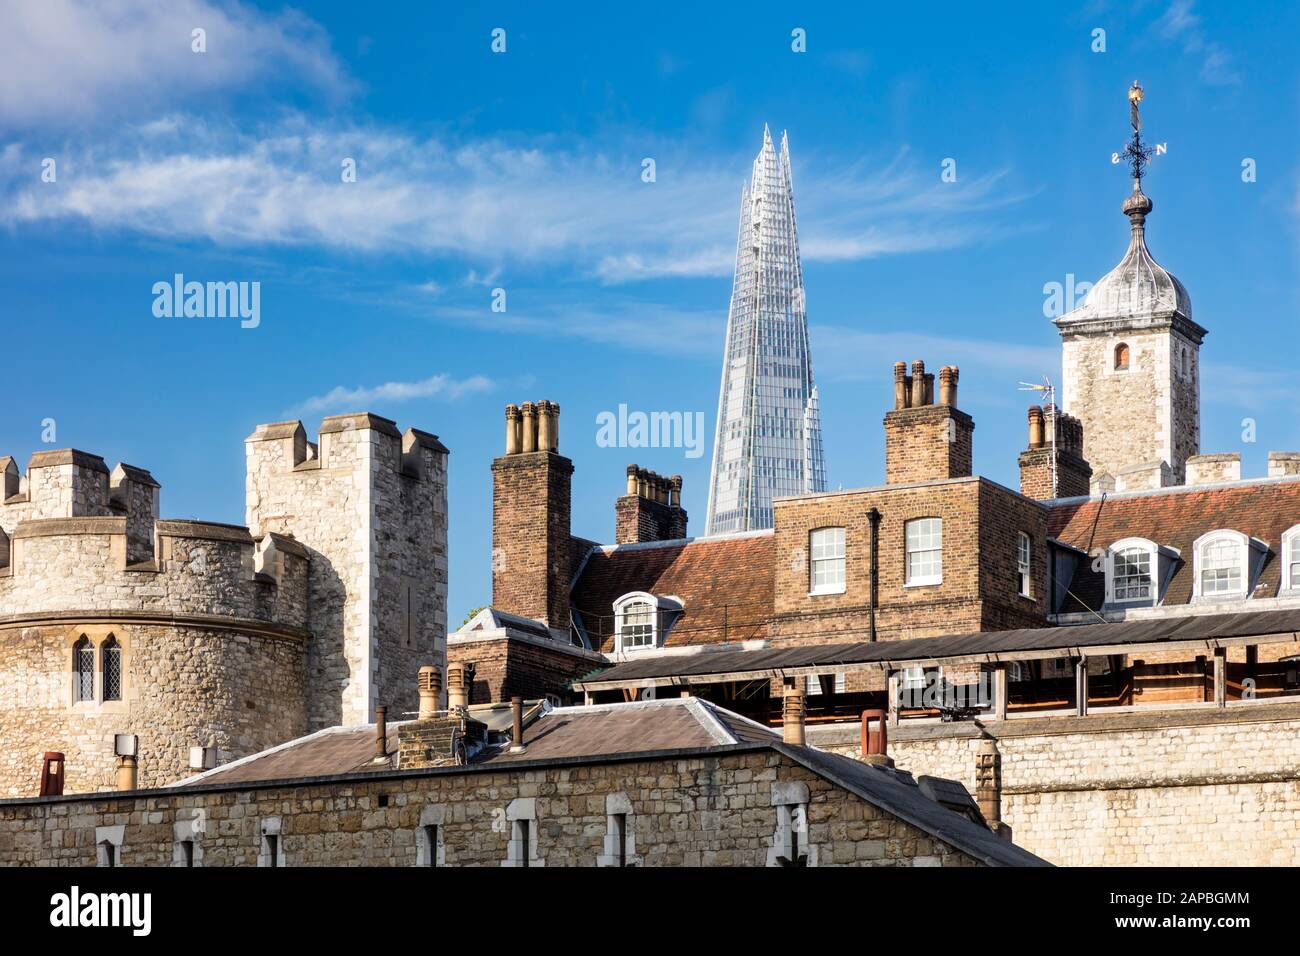 Ancien château, forteresse et prison - la Tour de Londres avec le Shard Beyond moderne, Londres, Angleterre, Royaume-Uni Banque D'Images